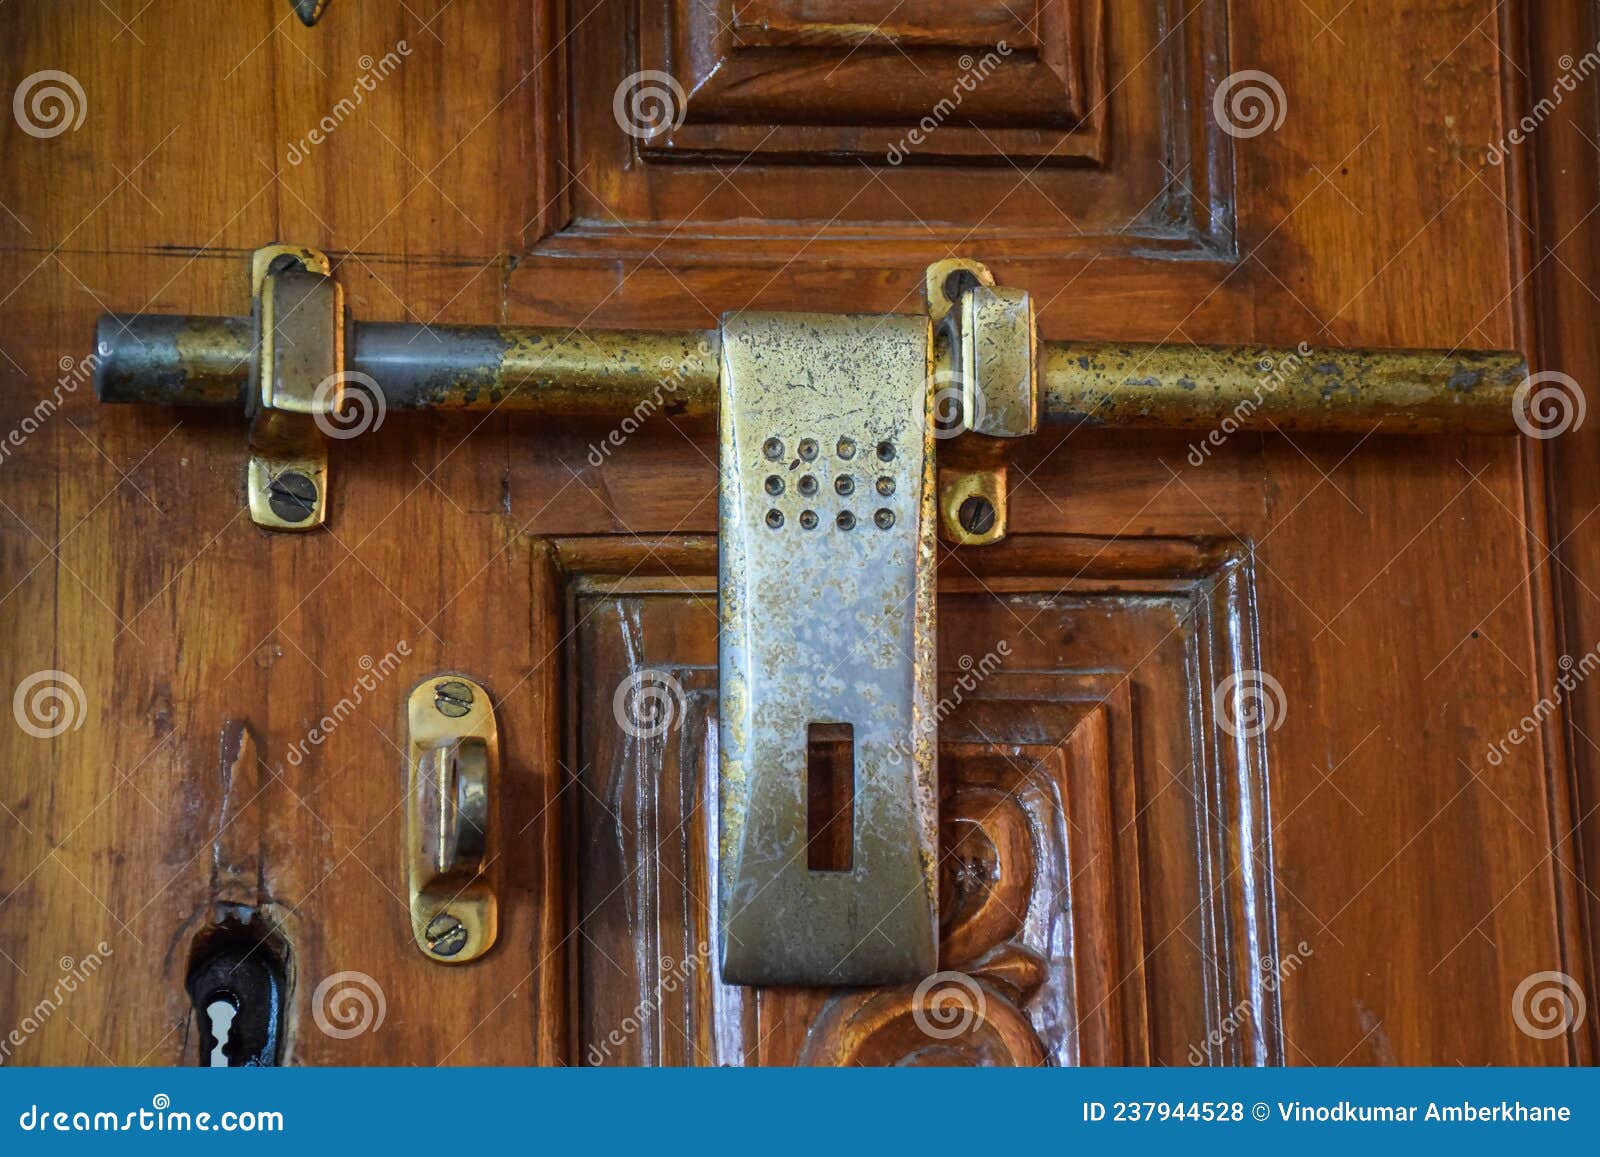 Stock Photo of Antique Indian Style Bronze Metal Door Lock on Wooden ...